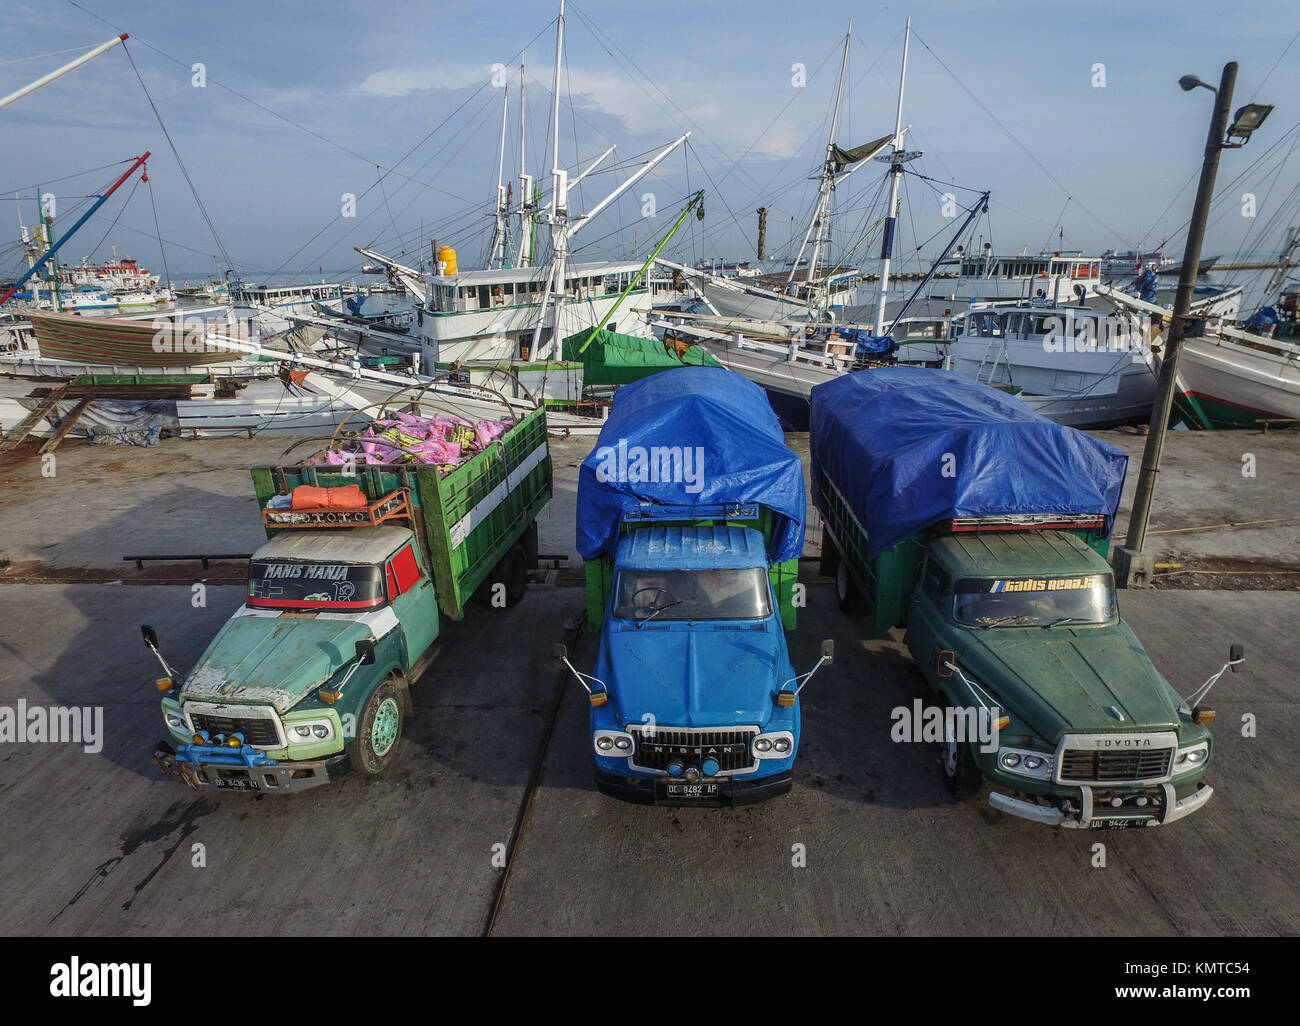 Alte Transporter Truck und das tägliche Leben in Paotere Hafen - Makassar. Stockfoto